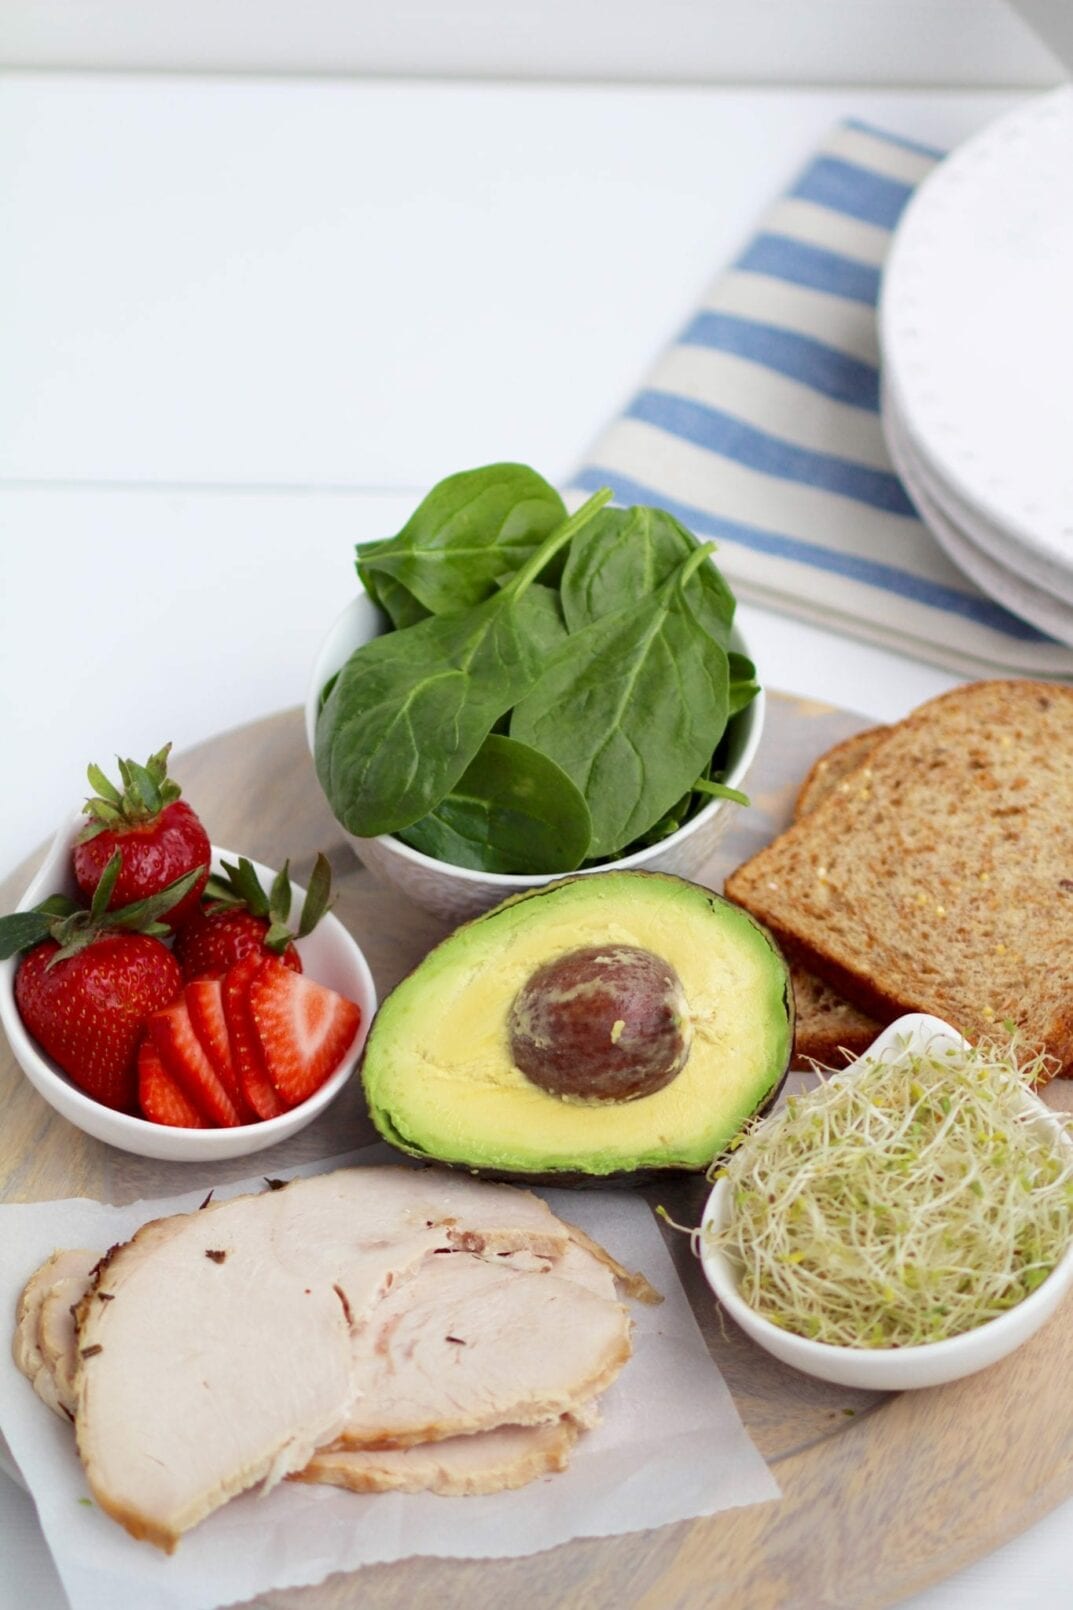 strawberry, spinach & turkey sandwich ingredients